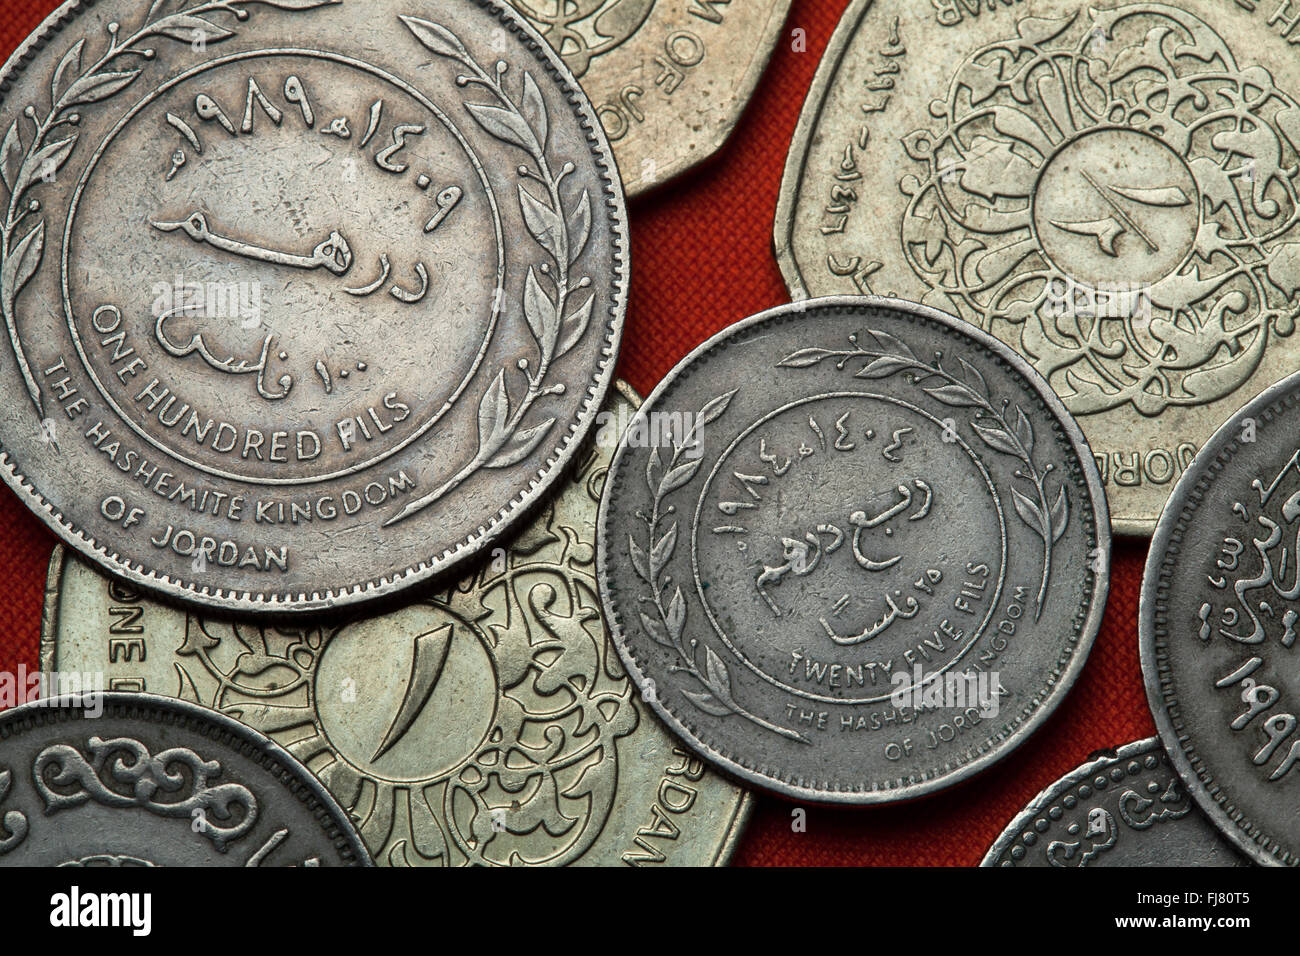 Coins of Jordan. Jordanian 25 fils coin. Stock Photo